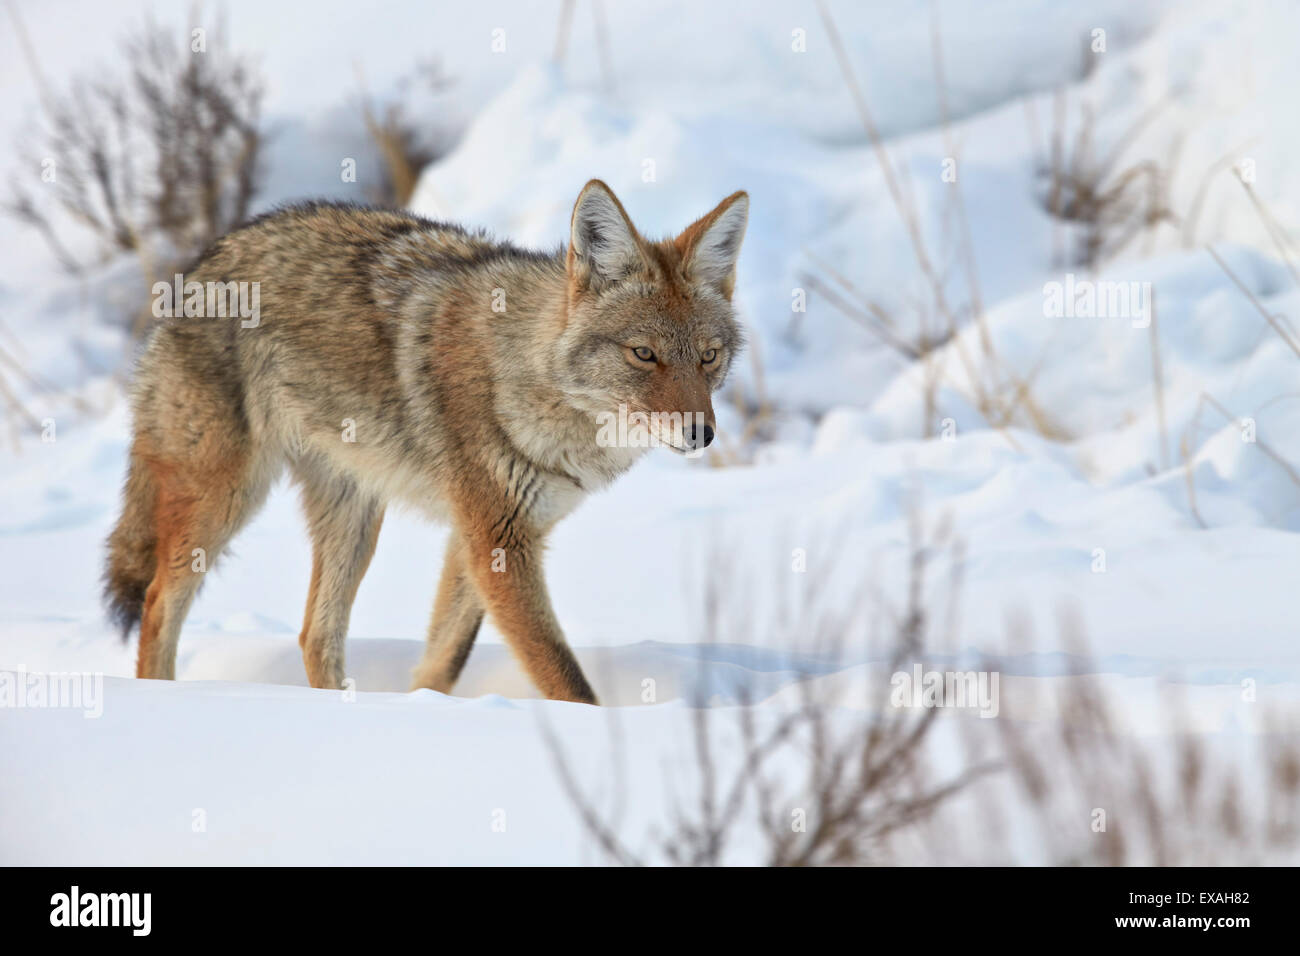 Le Coyote (Canis latrans) dans la neige en hiver, le Parc National de Yellowstone, Wyoming, États-Unis d'Amérique, Amérique du Nord Banque D'Images